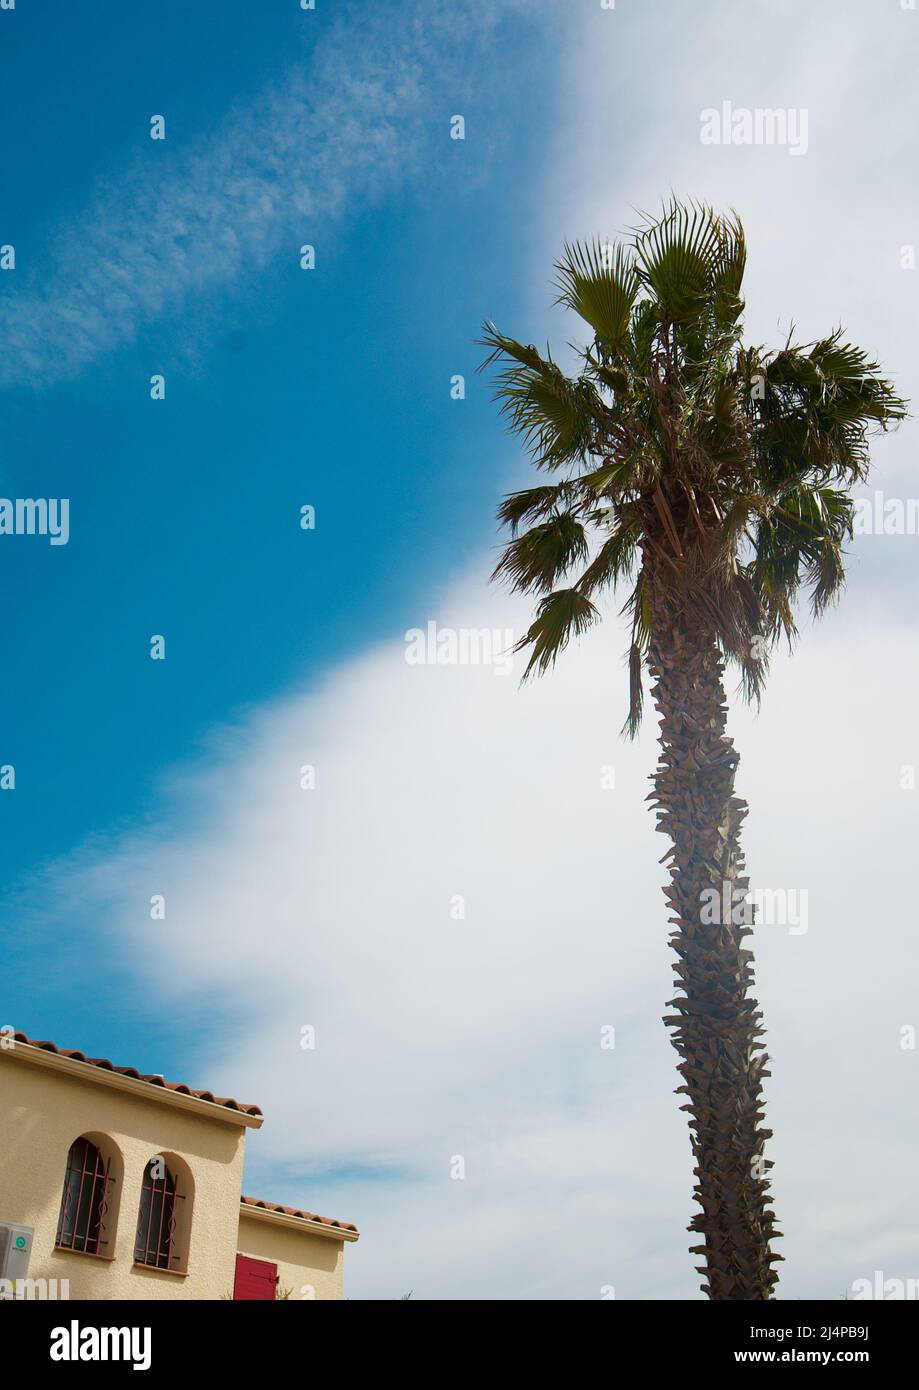 A Perpignan, Francia meridionale/meridionale, una palma è vista accanto a una villa casa in città, in una giornata di sole con un cielo blu presente. Arecaceae. Foto Stock